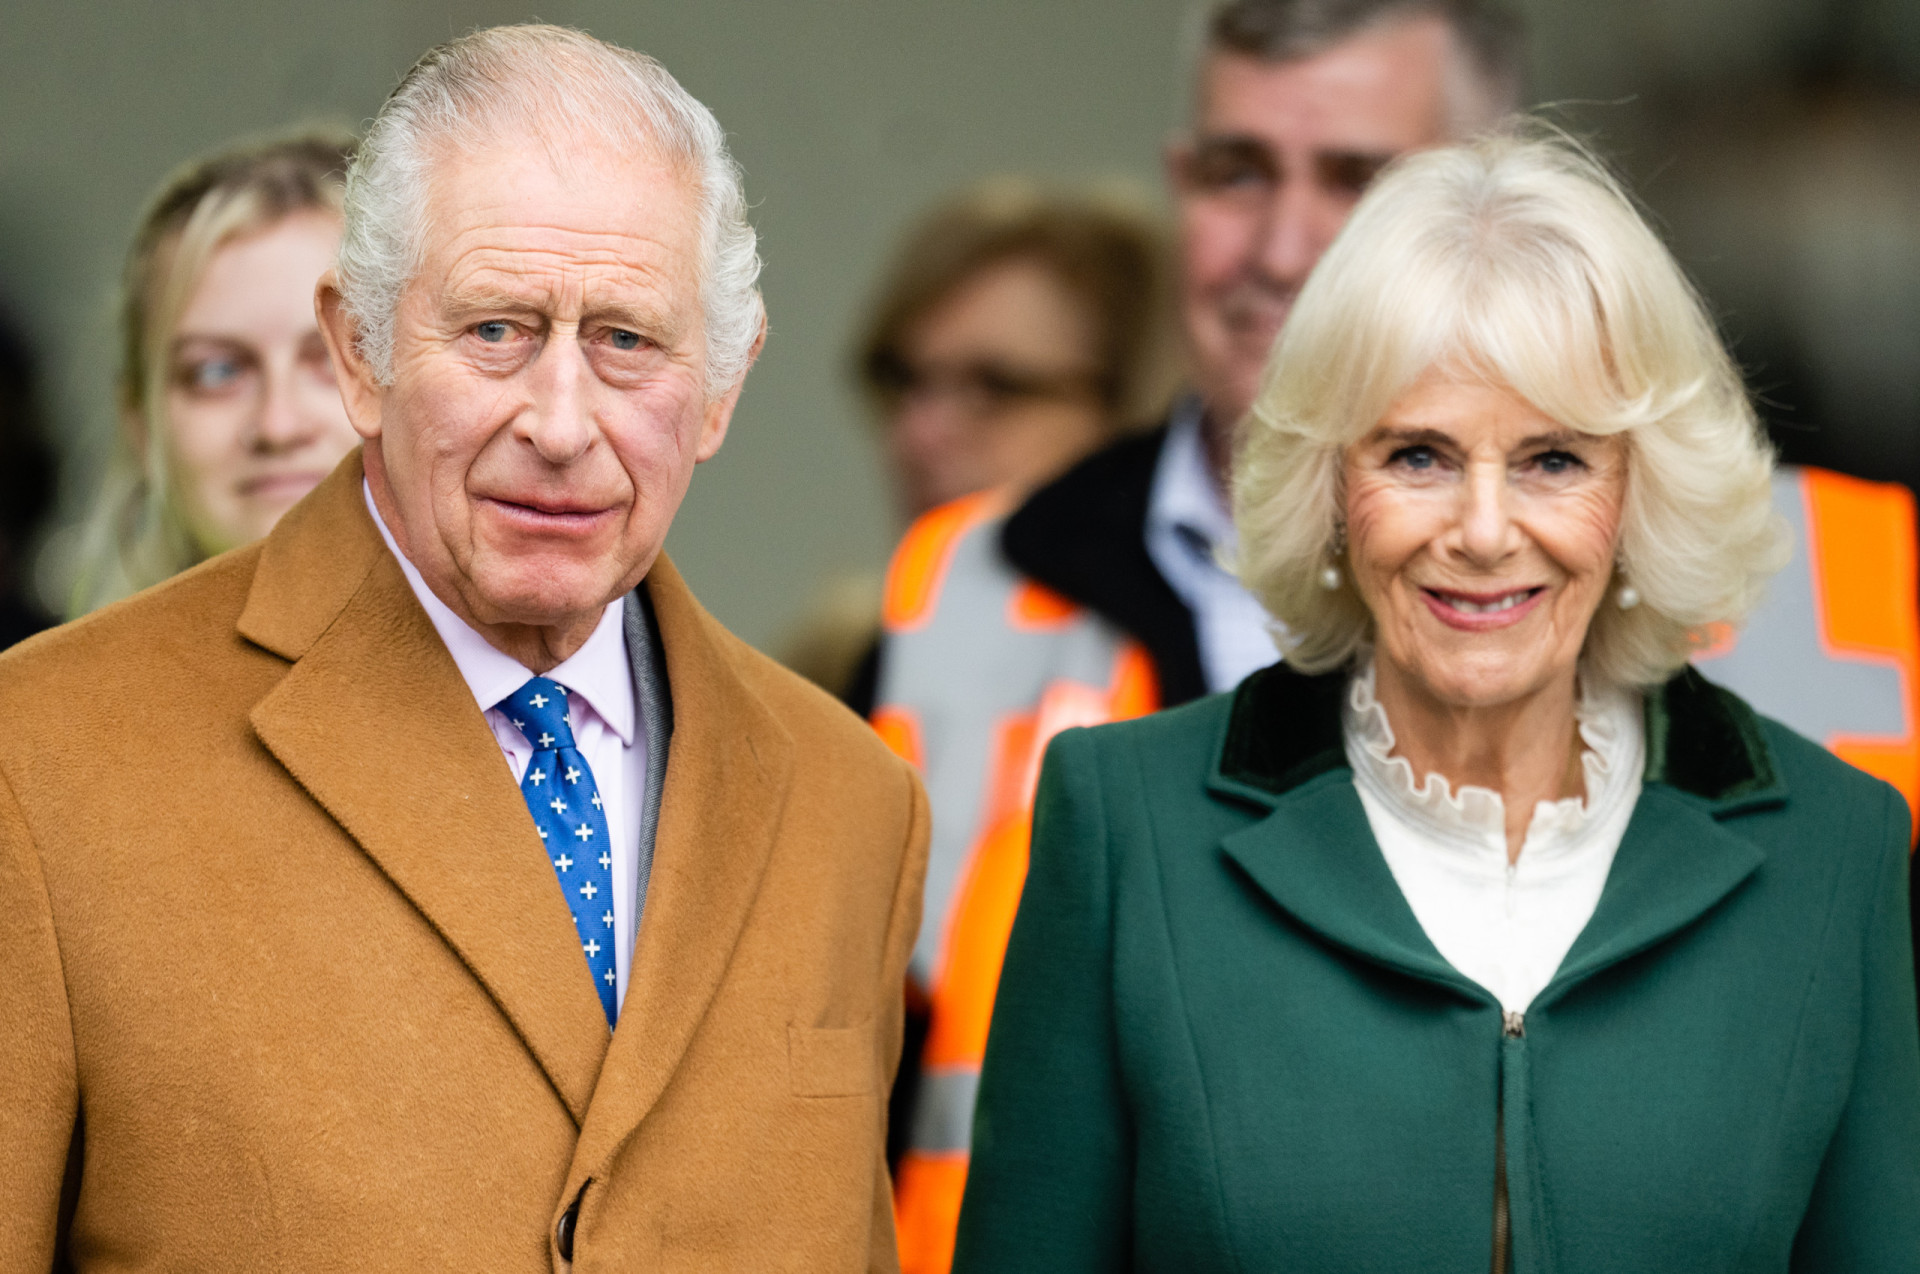 <p>Camilla wurde nach dem Tod von <a href="https://de.starsinsider.com/promis/431003/ein-blick-auf-das-leben-von-queen-elizabeth-ii" rel="noopener">Königin Elisabeth II.</a> im Jahr 2022 Königingemahlin. Am 6. Mai 2023 wurde sie an der Seite ihres Mannes, König Charles III., offiziell zur Königin Camilla gekrönt. Aber was passiert, wenn der König vor ihr stirbt? Würde Camilla einen neuen Titel erhalten, und würden sich ihre Aufgaben ändern? Könnte sie die Regentschaft übernehmen?</p> <p>Diese Galerie beantwortet diese Fragen und mehr über die Zukunft von Königin Camilla. Klicken Sie weiter, um alles zu erfahren.</p><p>Sie können auch mögen:<a href="https://de.starsinsider.com/n/183603?utm_source=msn.com&utm_medium=display&utm_campaign=referral_description&utm_content=623860"> Beppu – Die japanische Stadt über dem Tor zur Hölle</a></p>